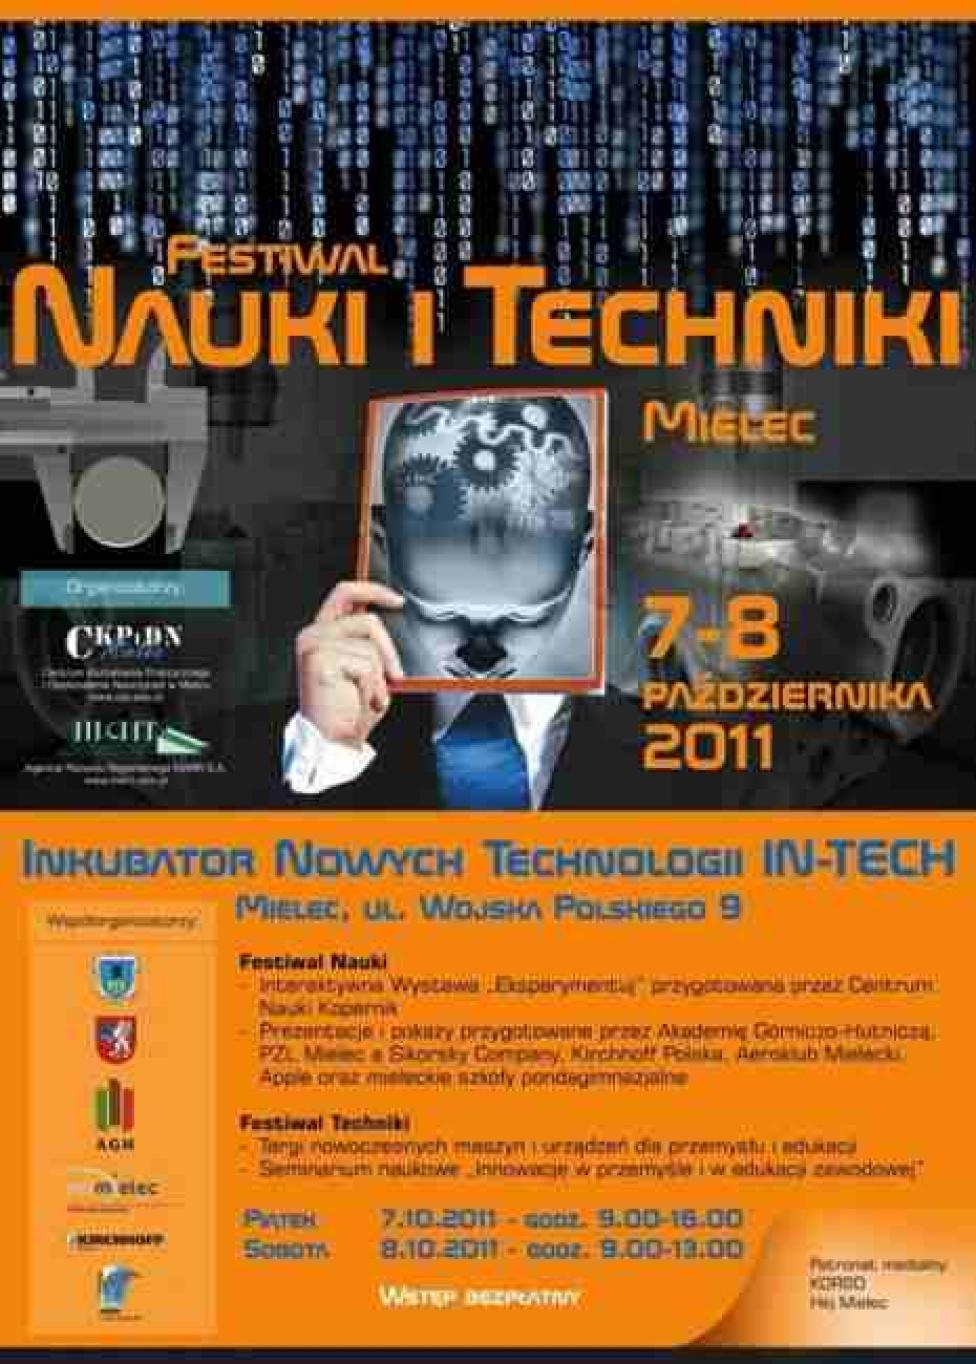 Festiwal Nauki i Techniki Mielec, 7-8.10.2011 (plakat)